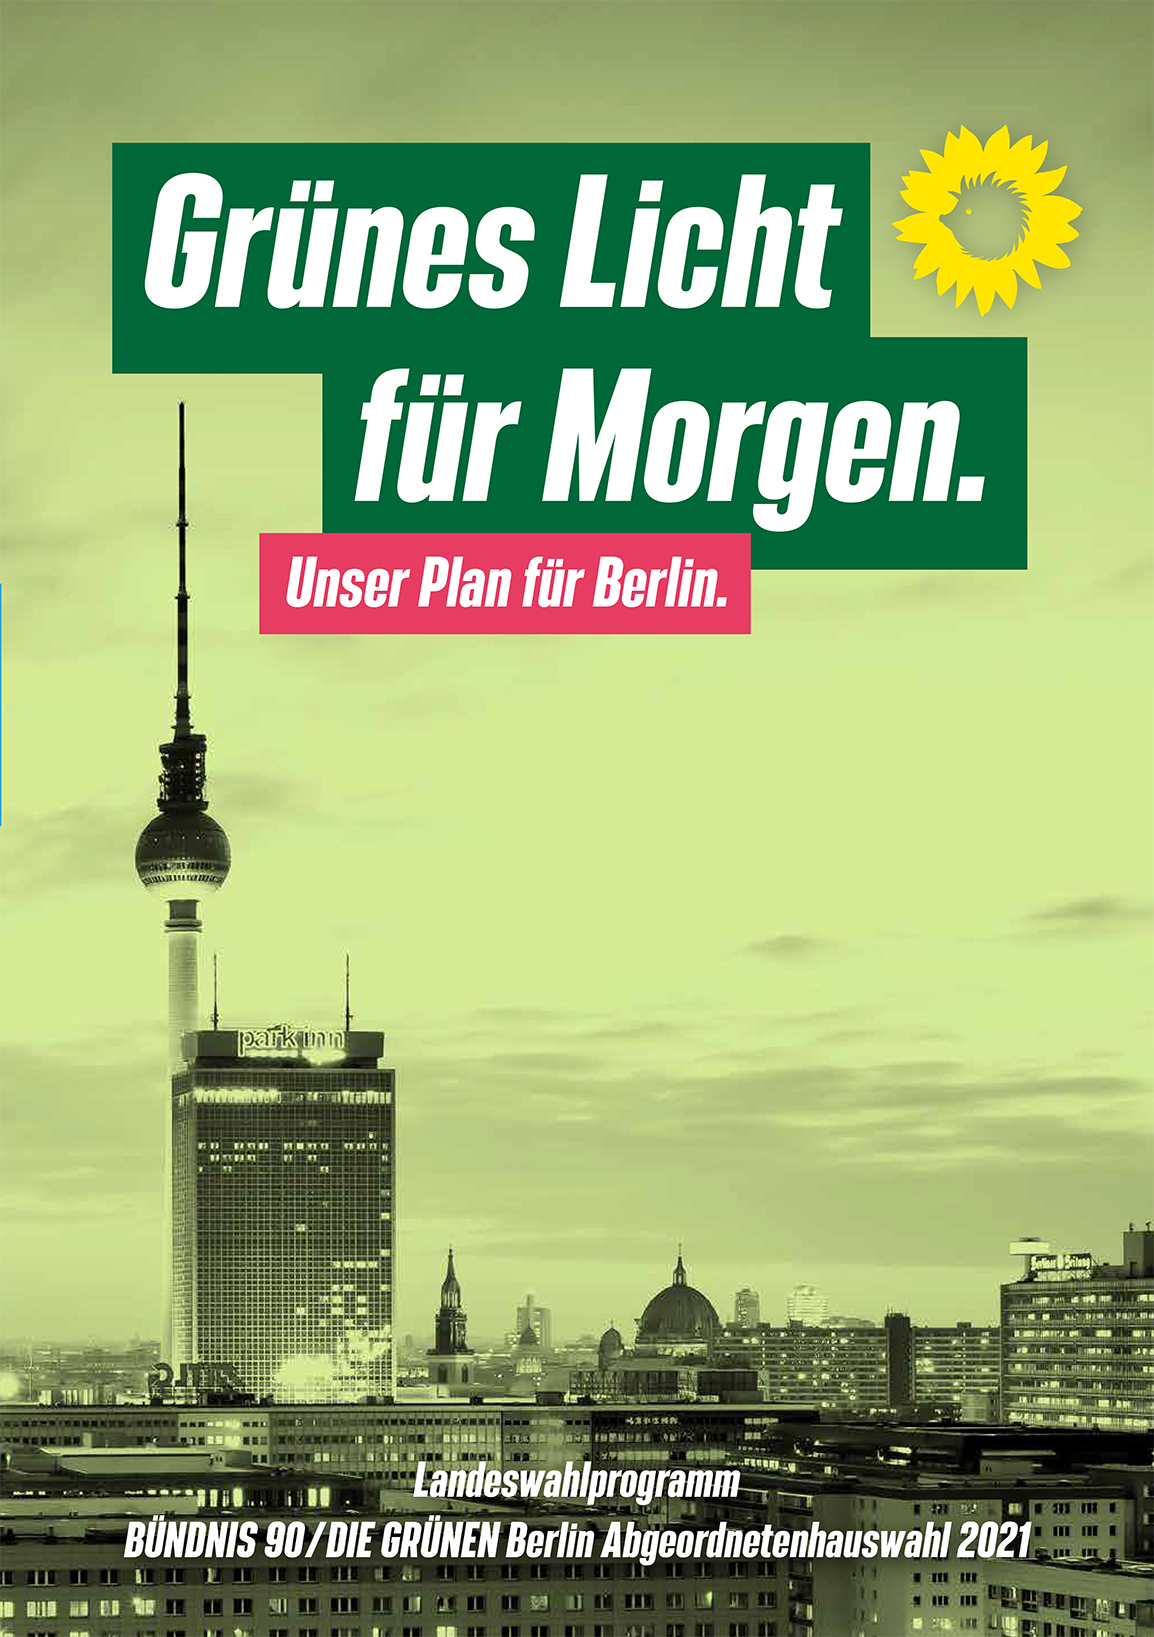 Titelseite des Wahlprogramms von Bündnis 90/Die Grünen Berlin für die Abgeordnetenhauswahl 2021. Abgebildet ist ein Stadtpanorama, das grün eingefärbt wurde. Darauf der Schriftzug "Grünes Licht für Morgen. Unser Plan für Berlin." 